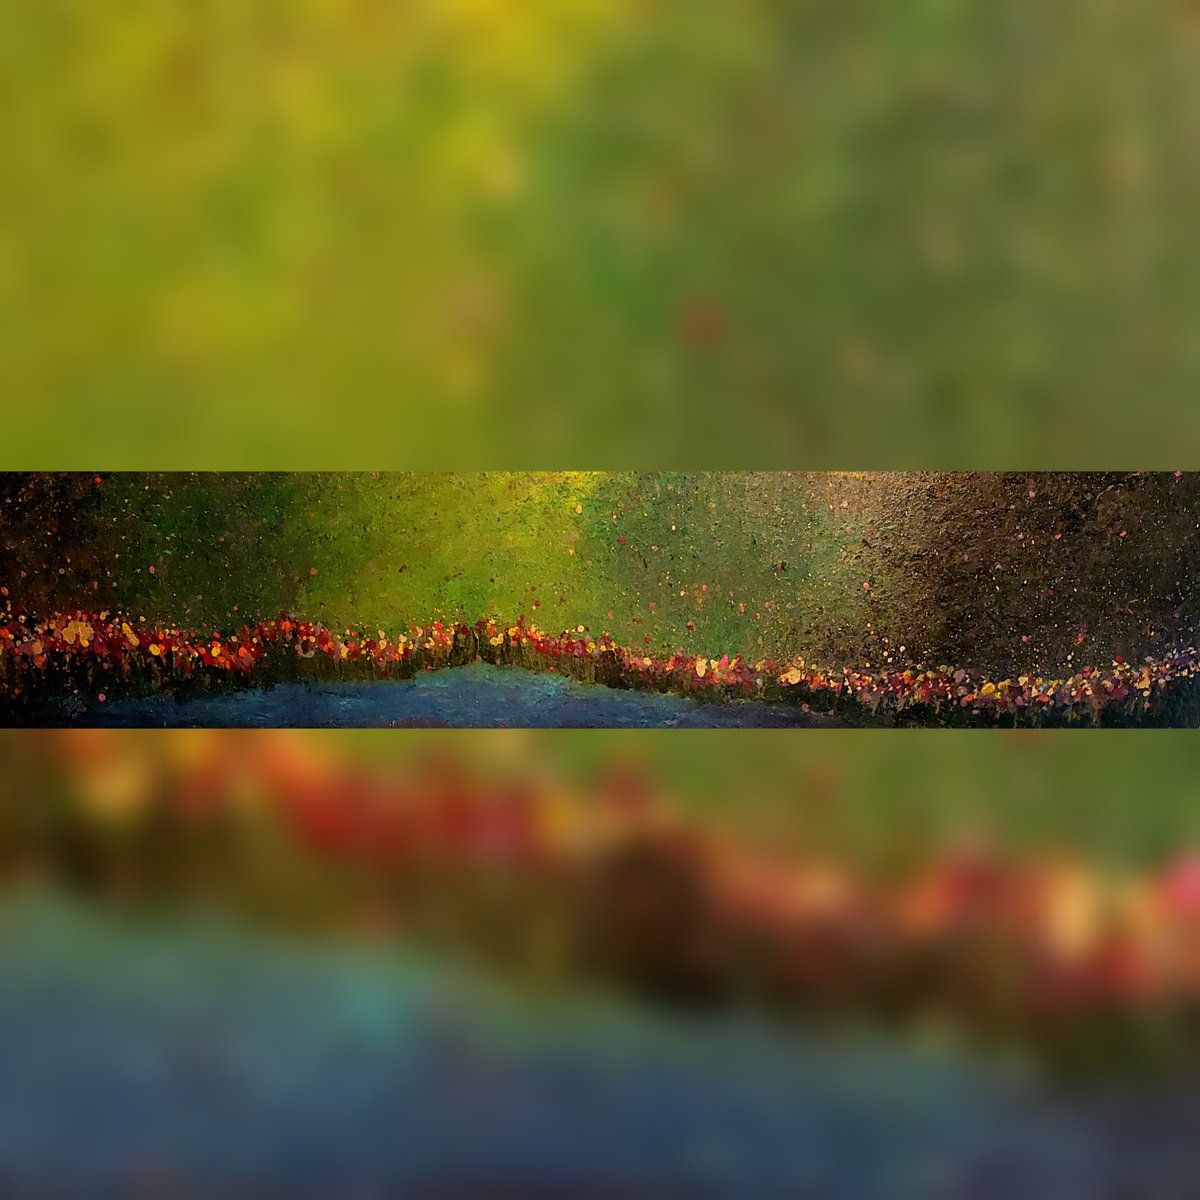 Hier das neueste Meisterwerk von Hubert - eine lebendige Blumenwiese, die die Schönheit und Vielfalt der Natur einfängt. 🏞💐🎨 Auf via-eberle.com/artworks-by-hu… können weitere #Kunstwerke von Hubert eingesehen werden. 💻📱 Wir wünschen allen ein frohes und blühendes #Osterfest! 🐰🌼🐣